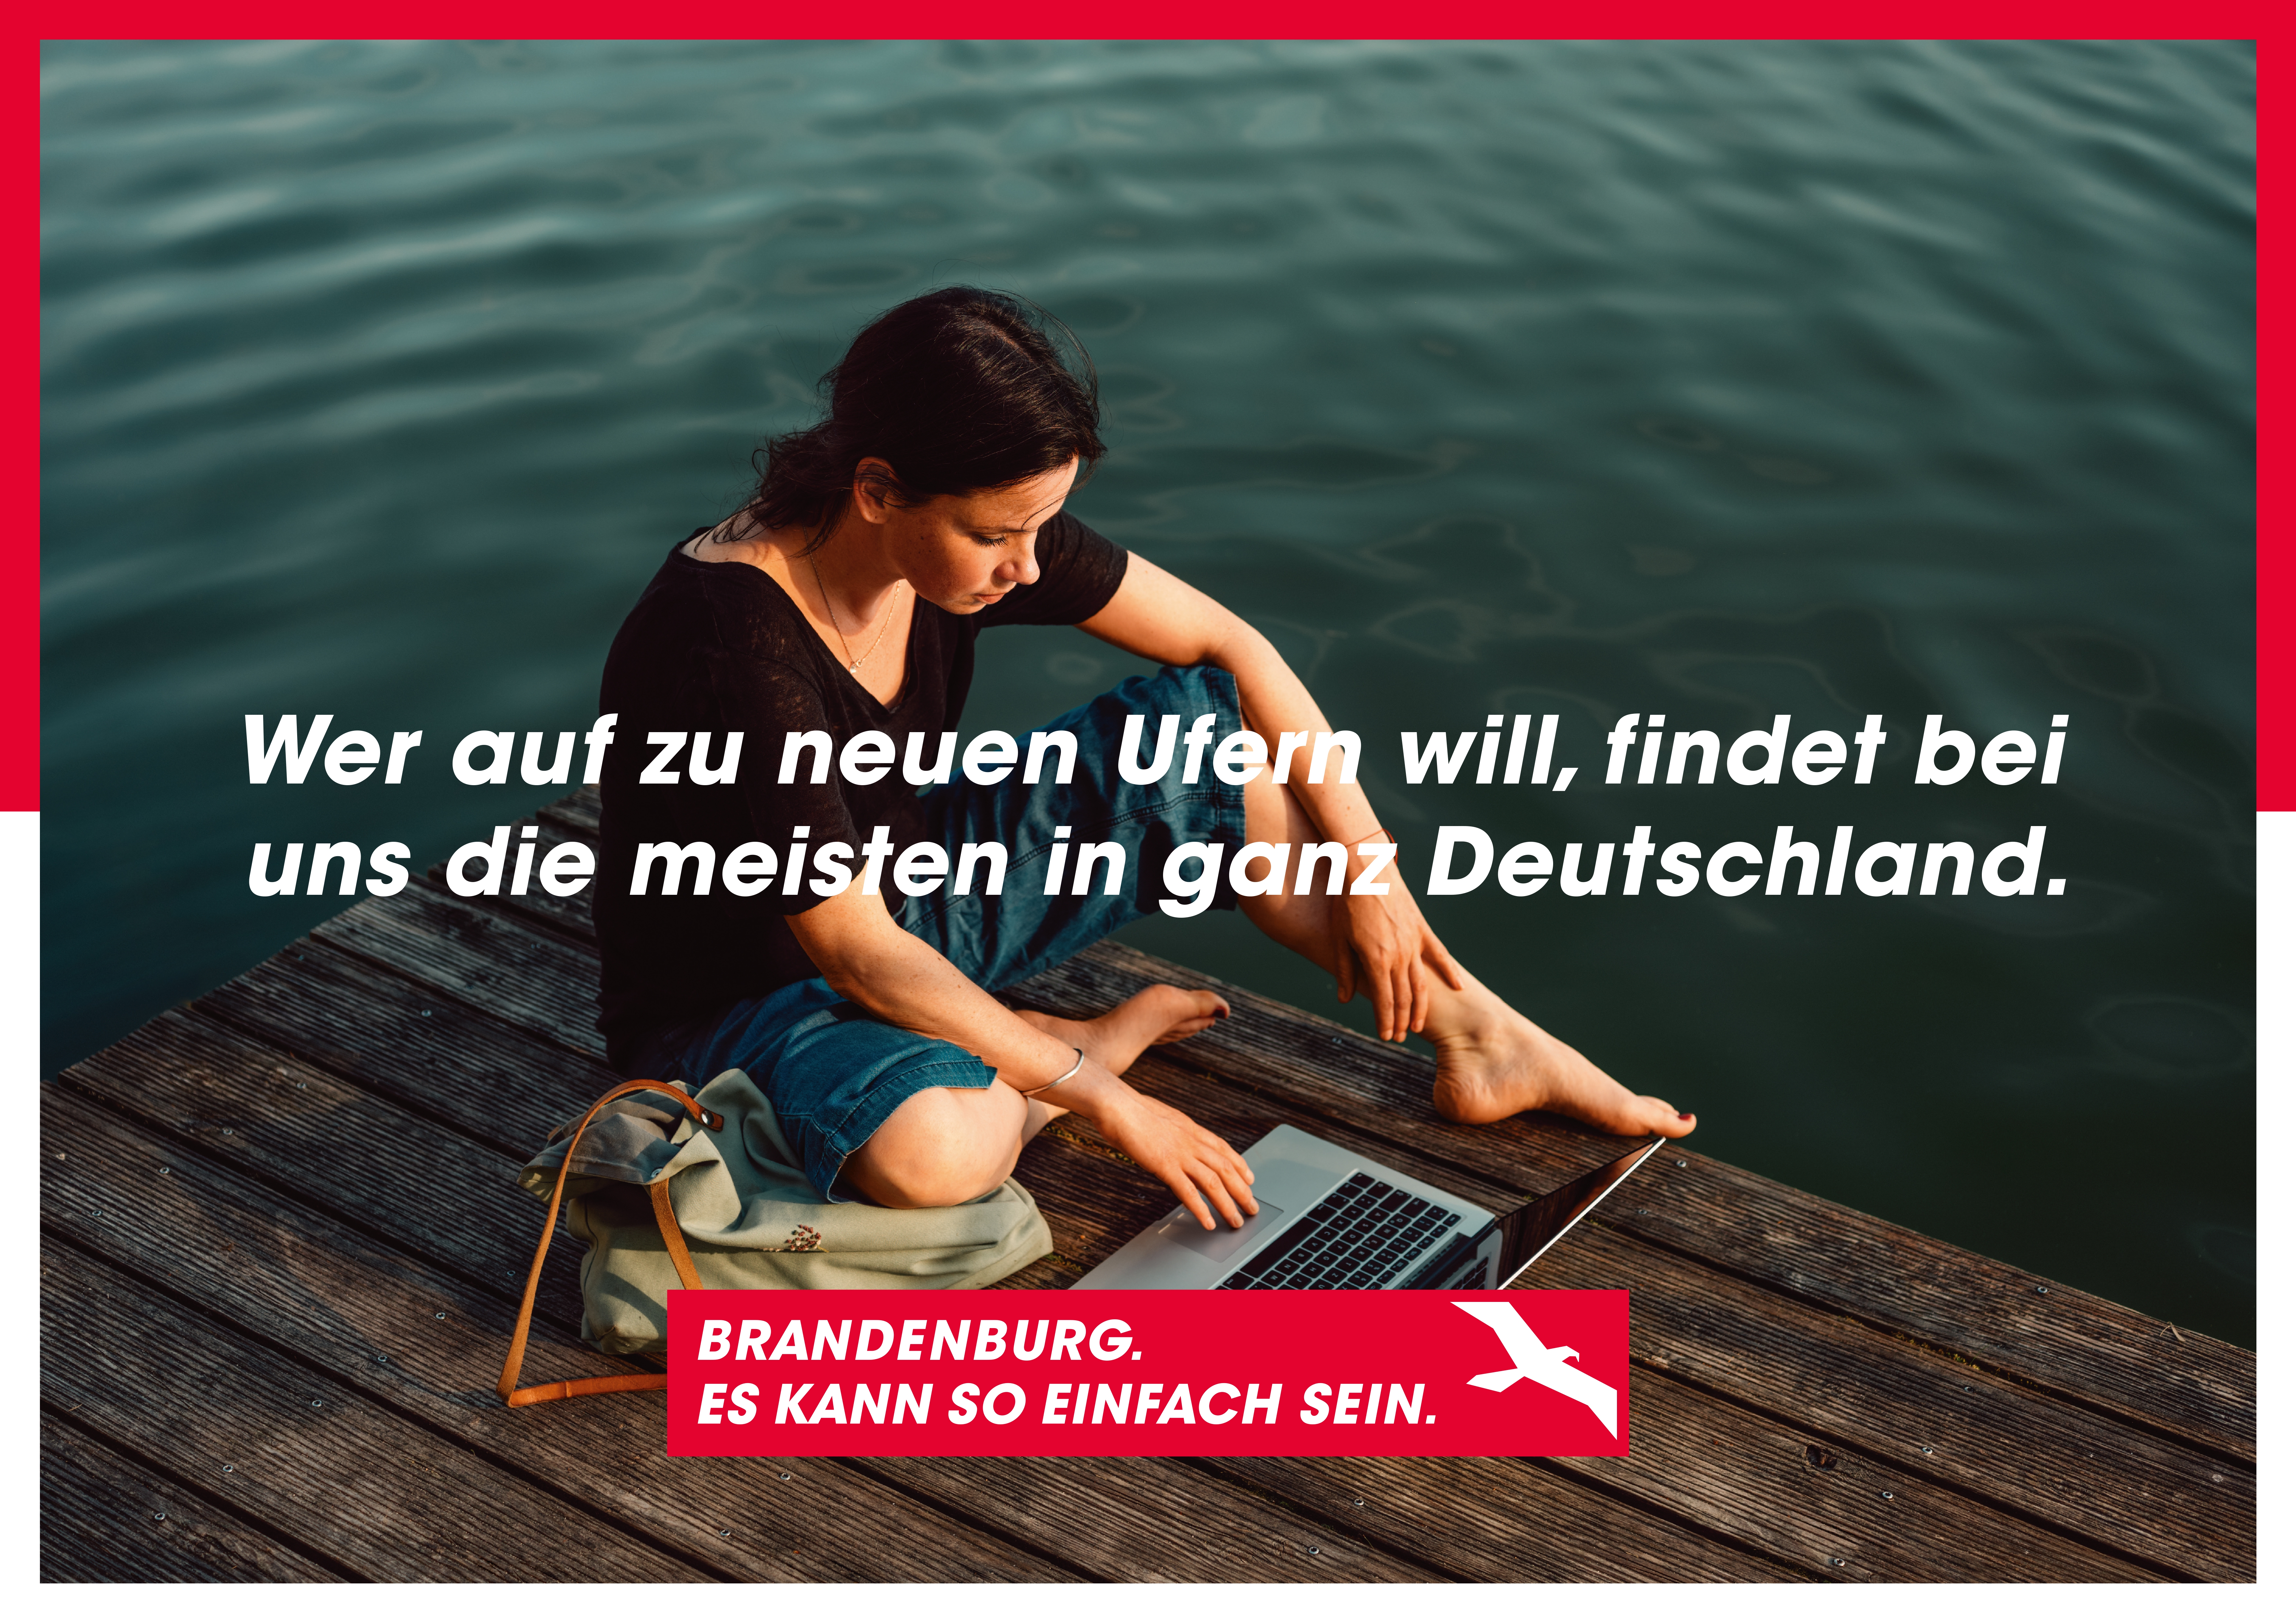 Eine Frau sitzt mit einem Laptop an einem Steg. Darauf der Schriftzug "Wer auf zu neuen Ufern will, findet bei uns die meisten in ganz Deutschland".  Am unteren Bildrand das Kampagnenlogo mit dem Schriftzug "Brandenburg. Es kann so einfach sein."